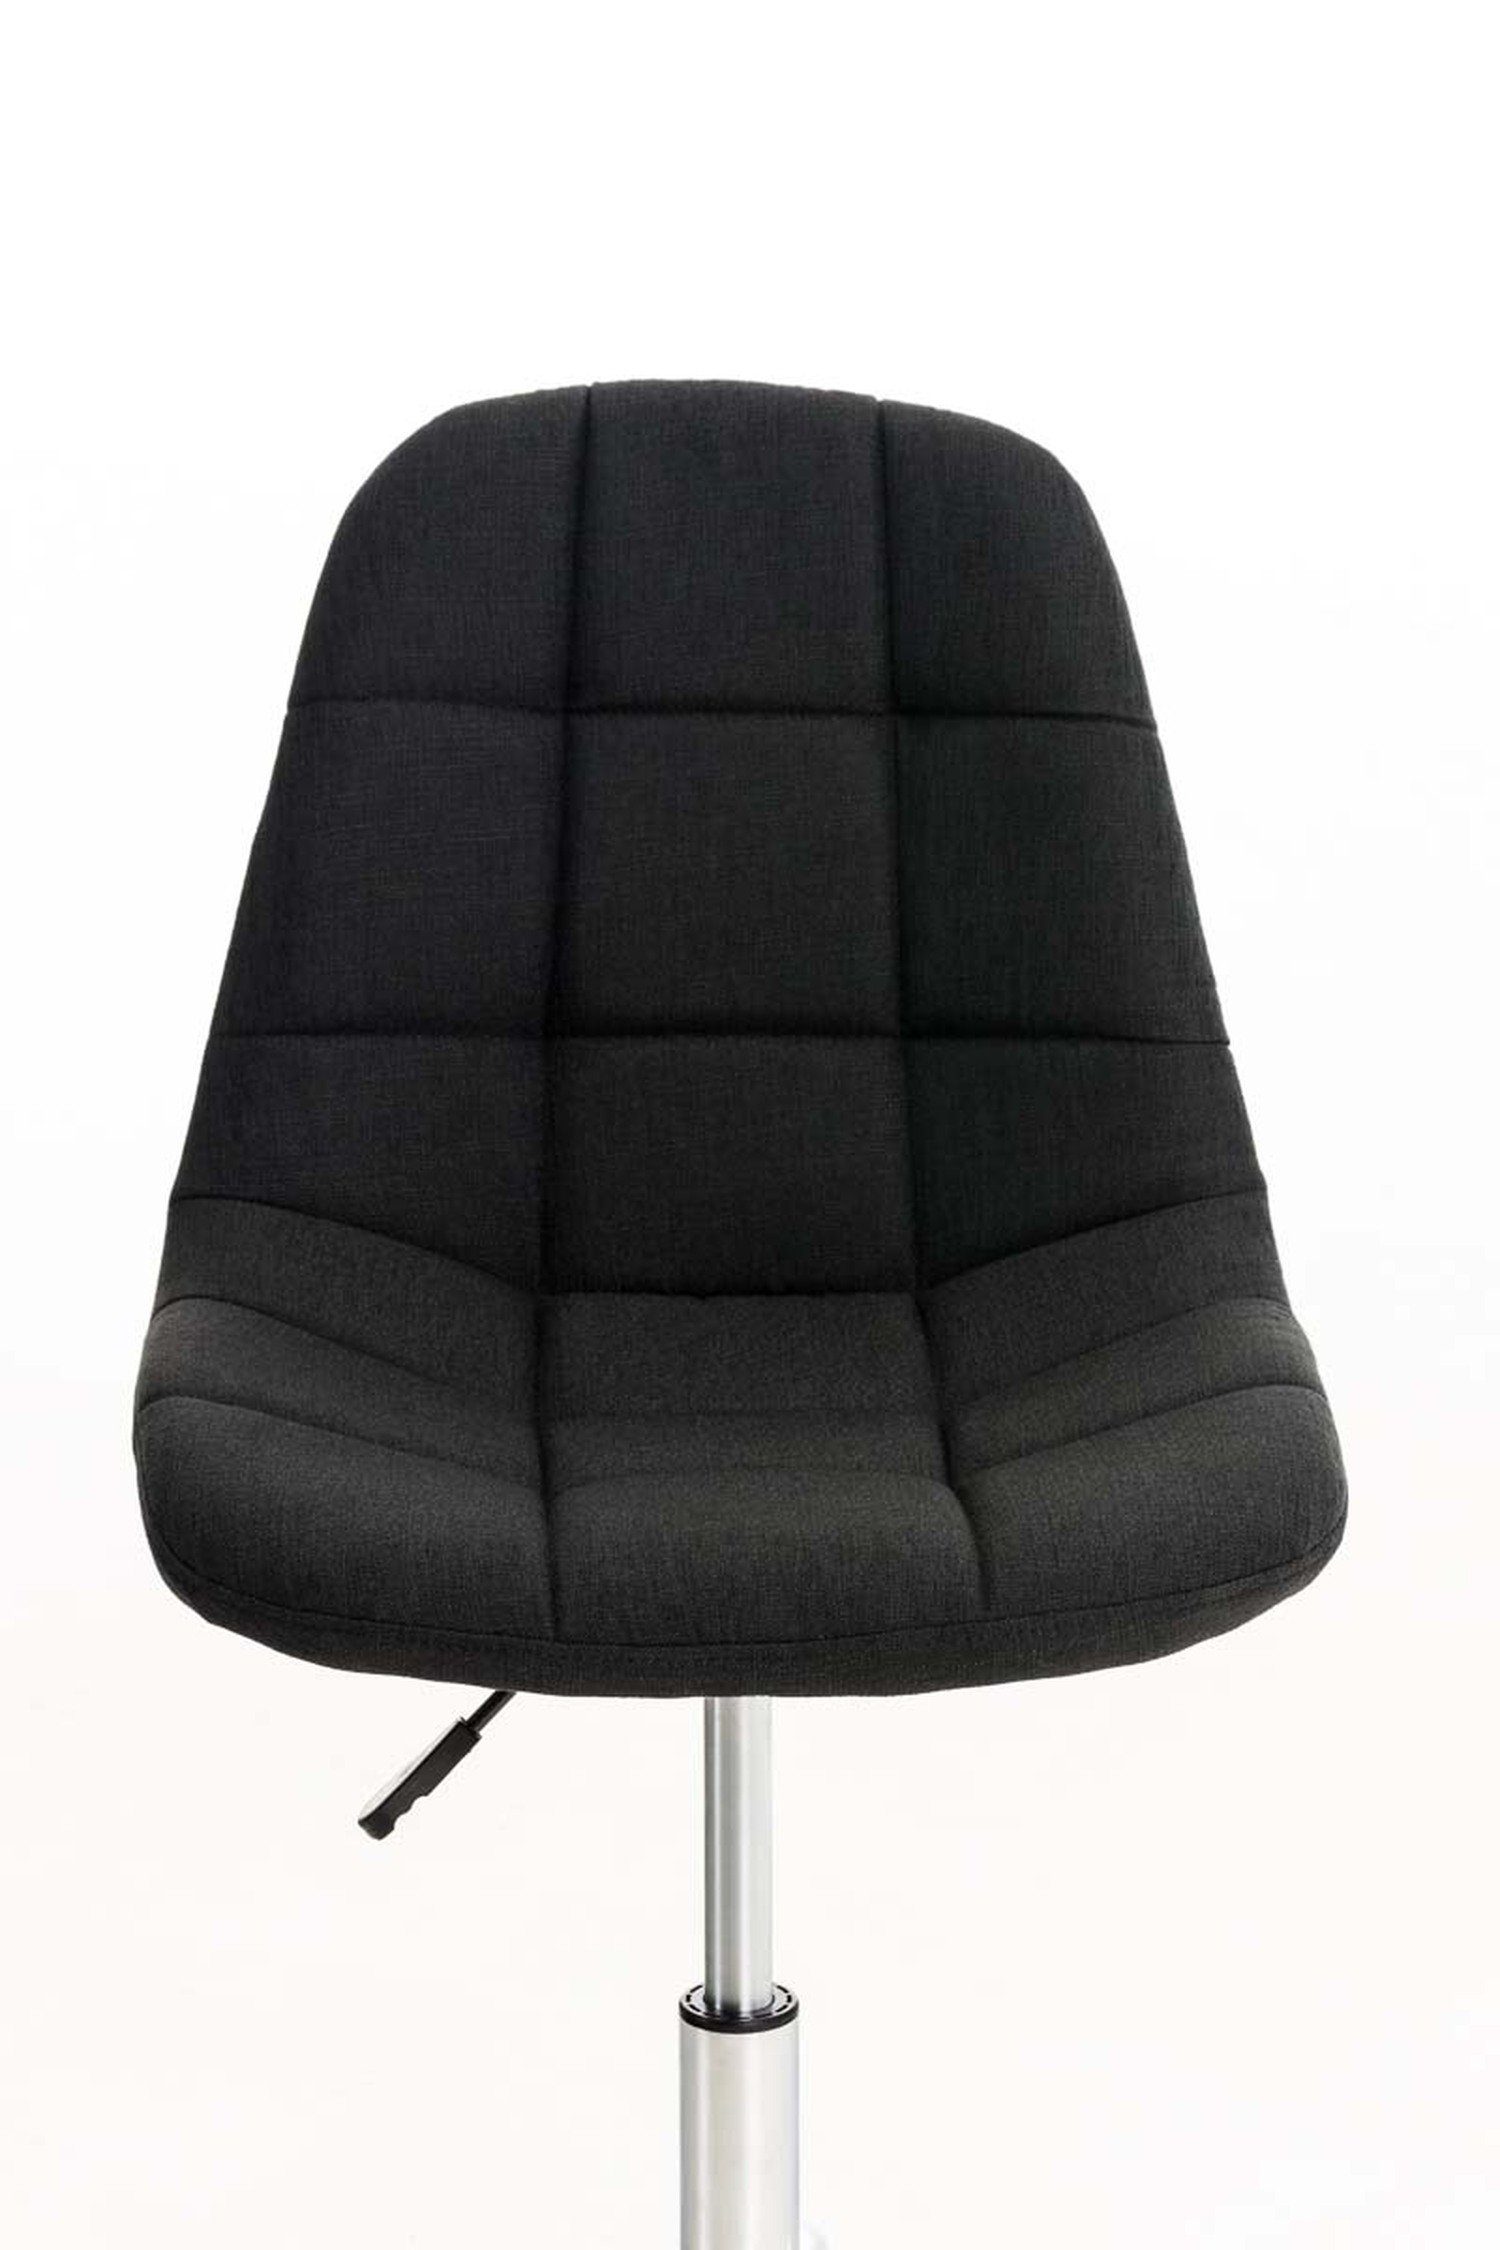 TPFLiving Bürostuhl Emily 360° (Schreibtischstuhl, und Gestell: - Drehstuhl, Stoff bequemer Sitzfläche: chrom drehbar höhenverstellbar Chefsessel, - mit Rückenlehne schwarz Konferenzstuhl), Metall